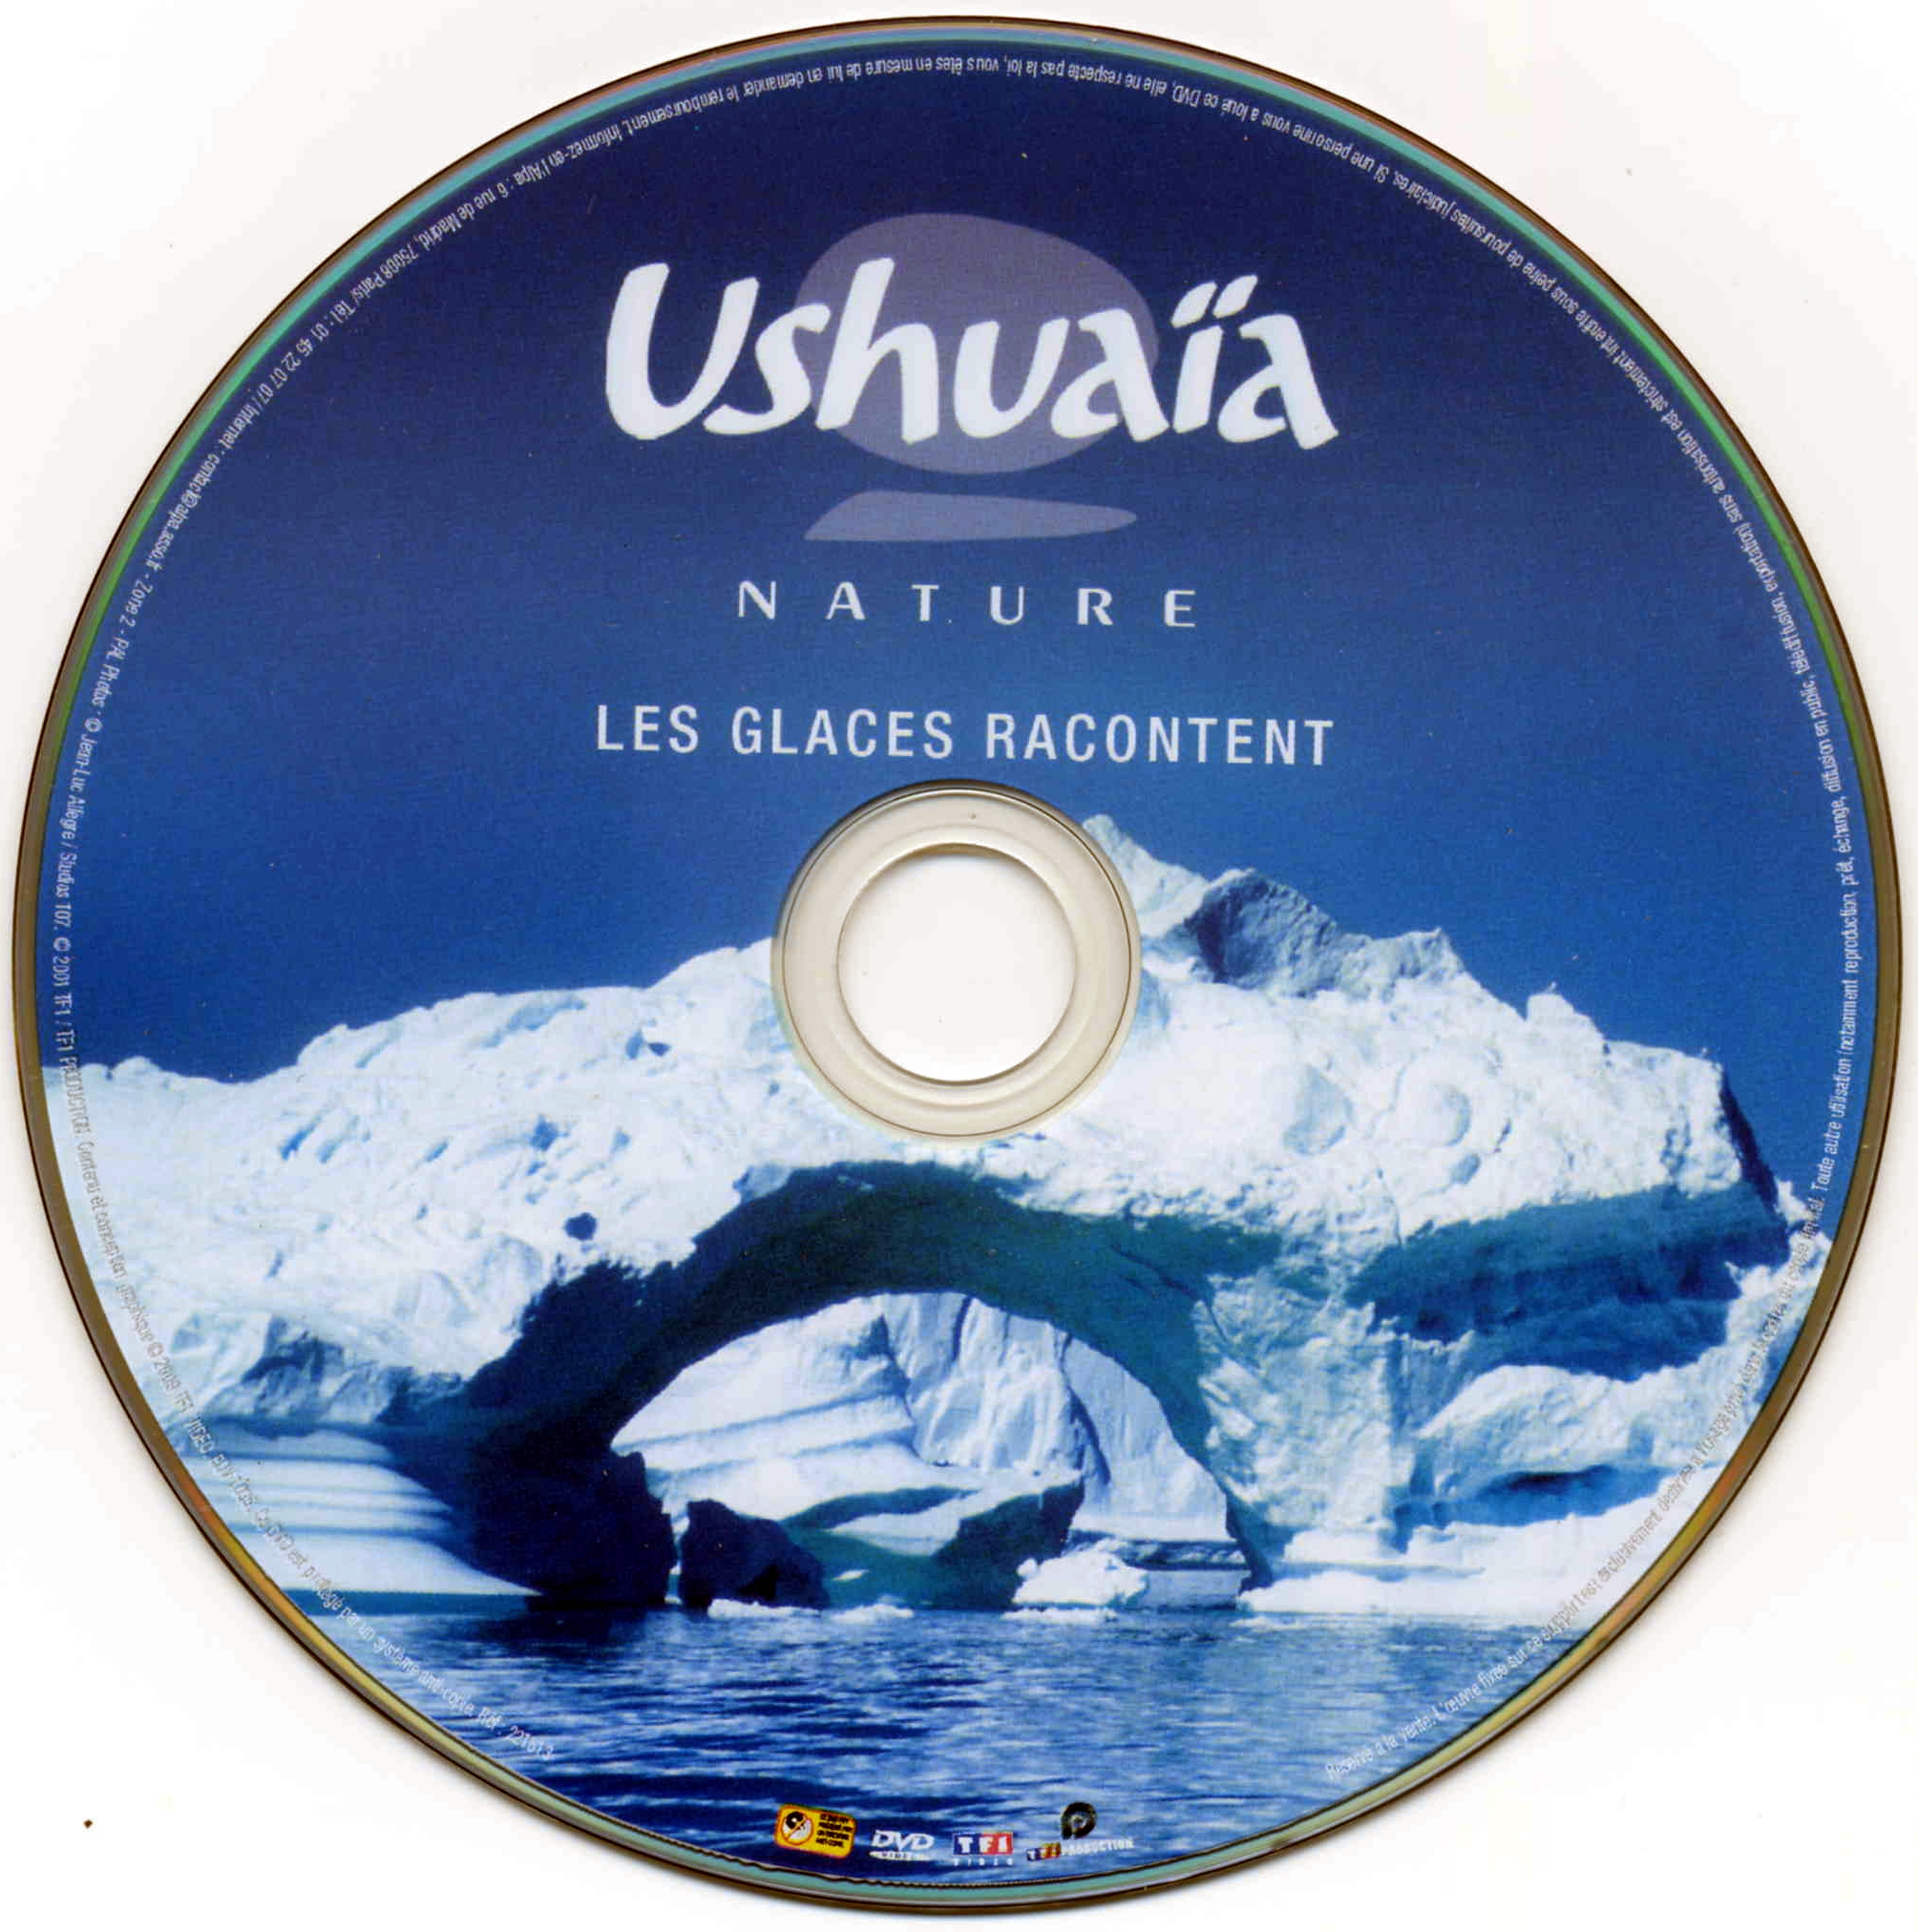 Ushuaia Nature - Les glaces racontent